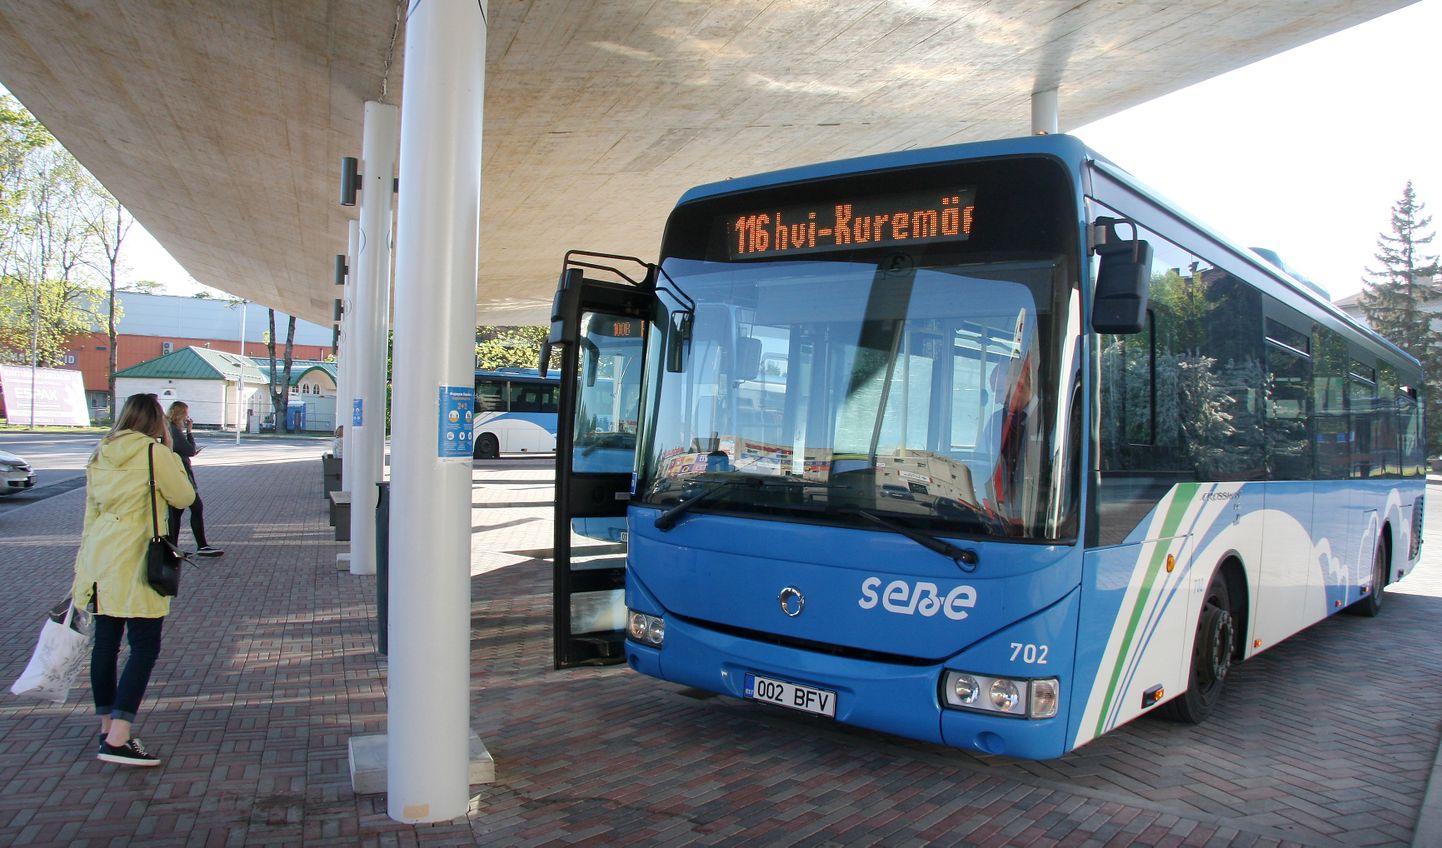 Jõhvi-Kuremäe buss on varasematel aastatel alustanud suvise sõidugraafiku järgi sõitmist juba aprillis, tänavu lükkub see koroonaohu tõttu pikalt edasi.